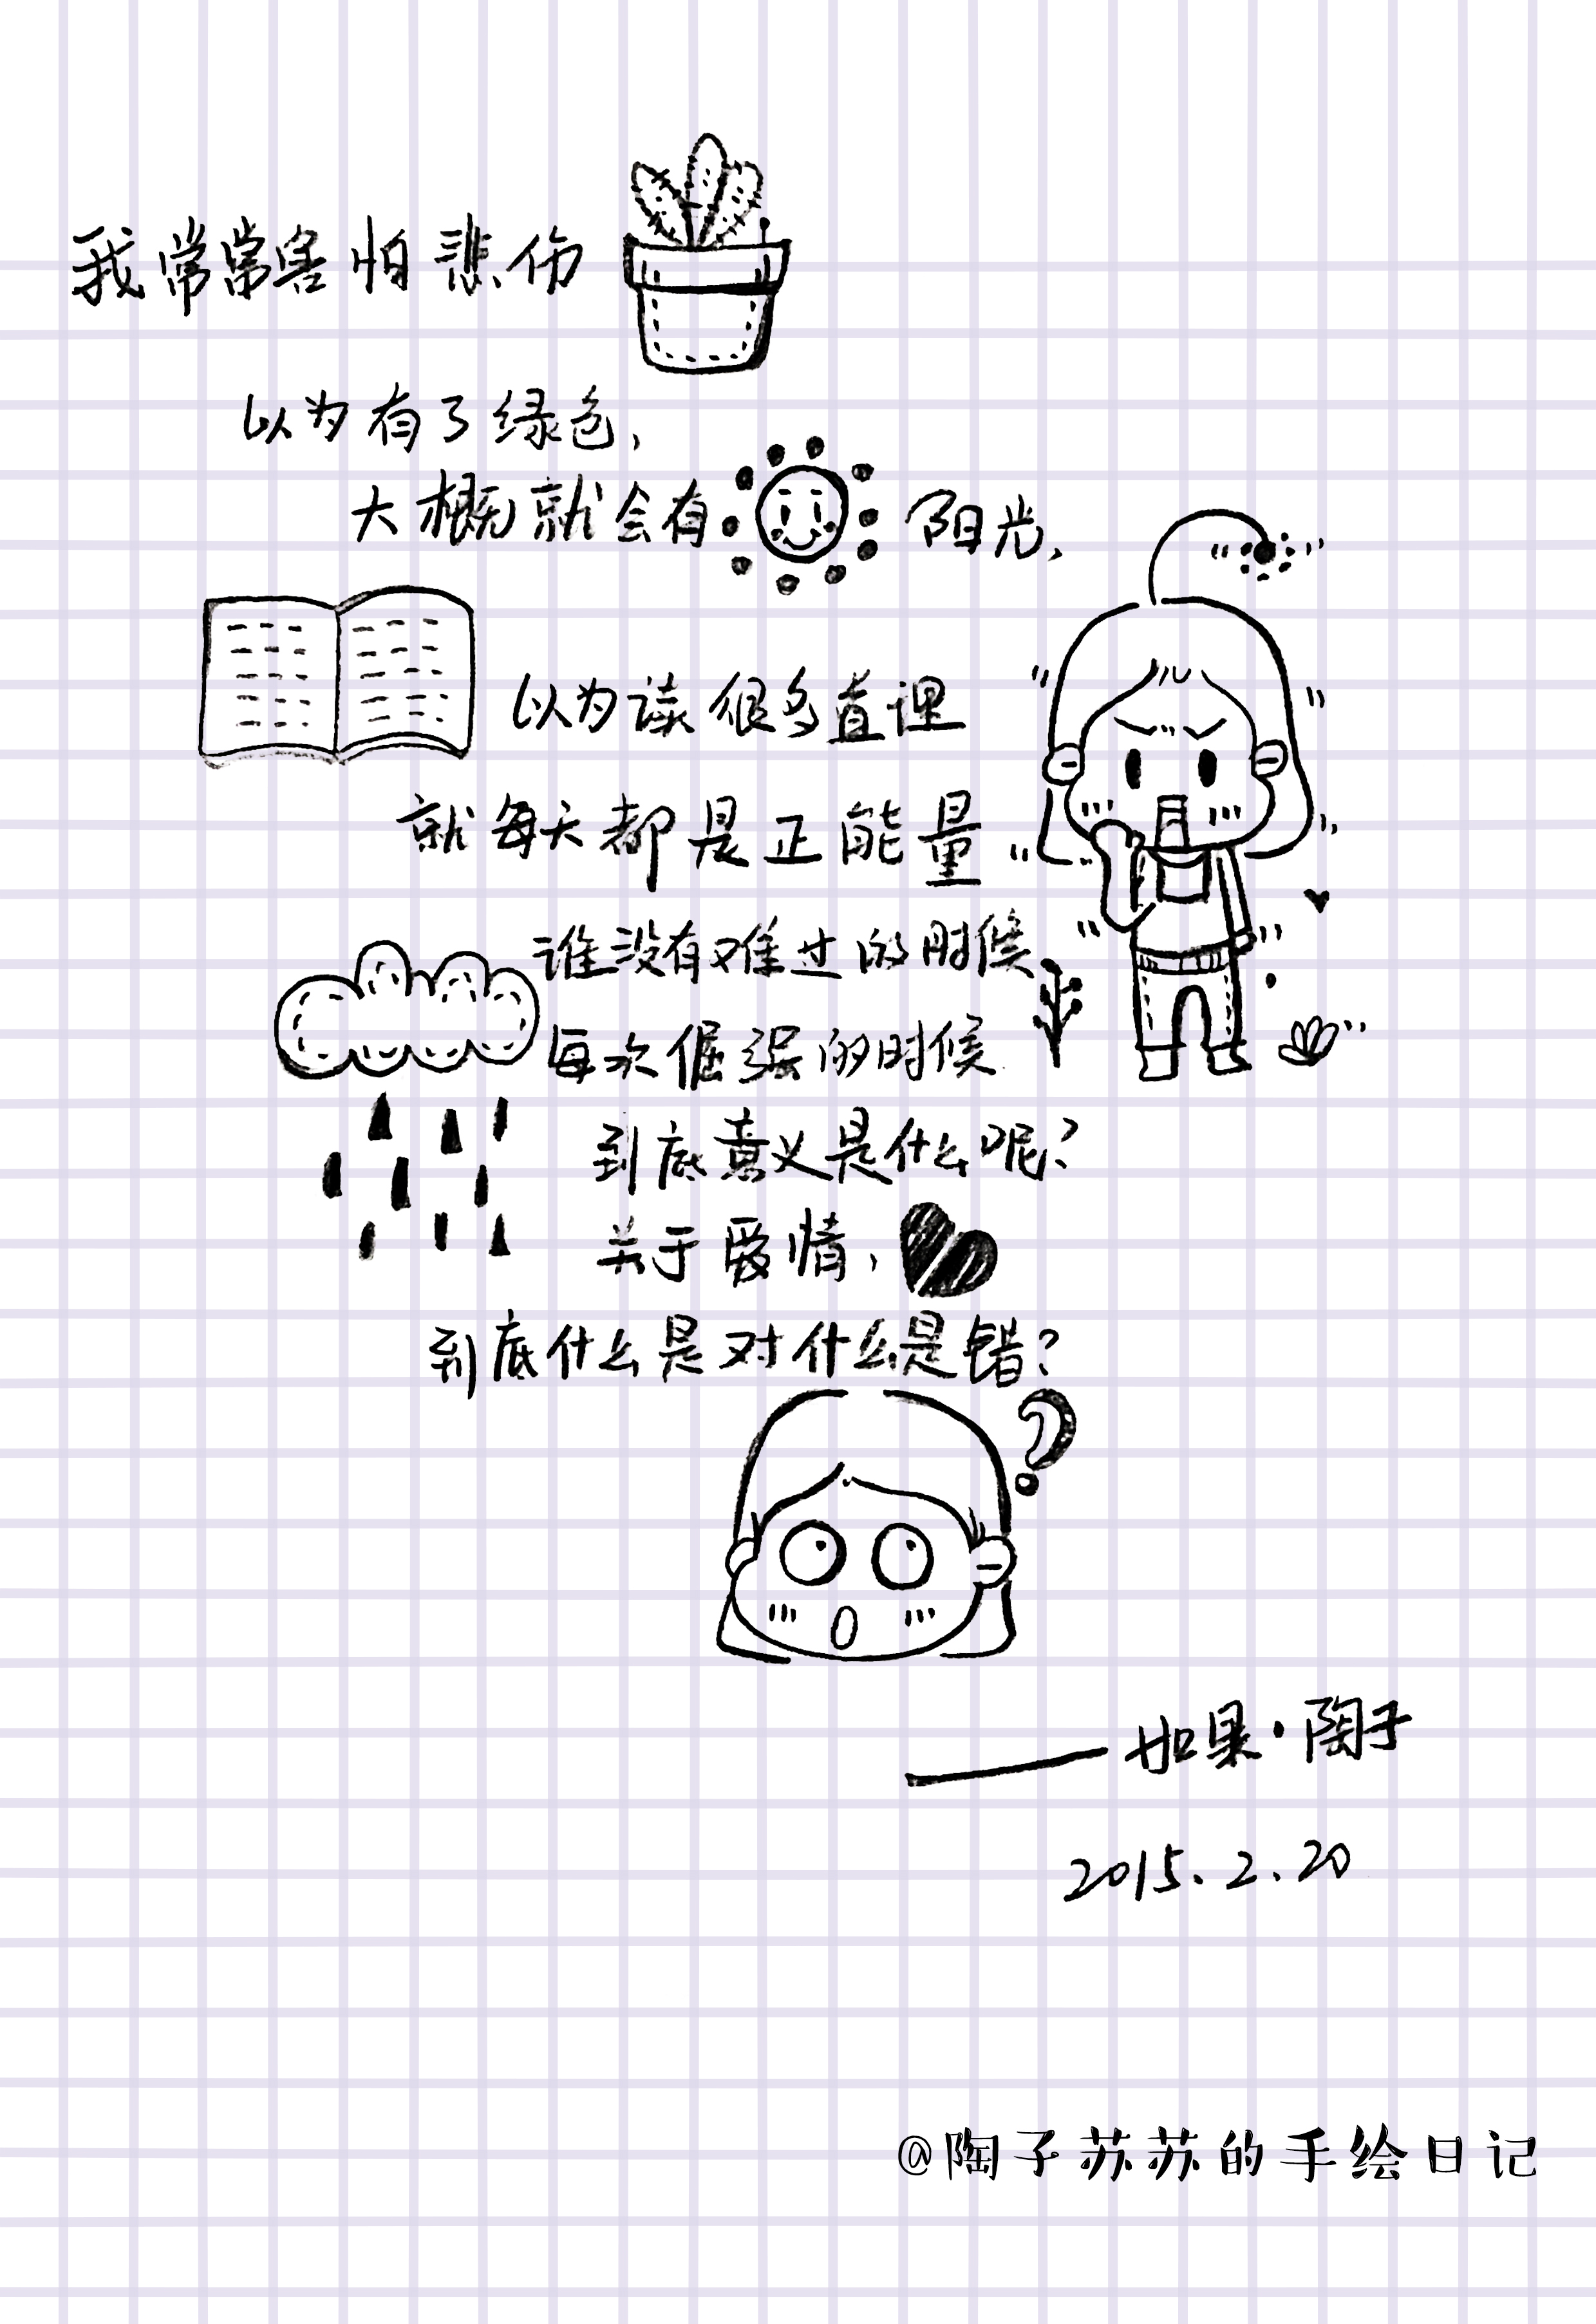 陶子苏苏的漫画手绘日记 黑白手绘日记